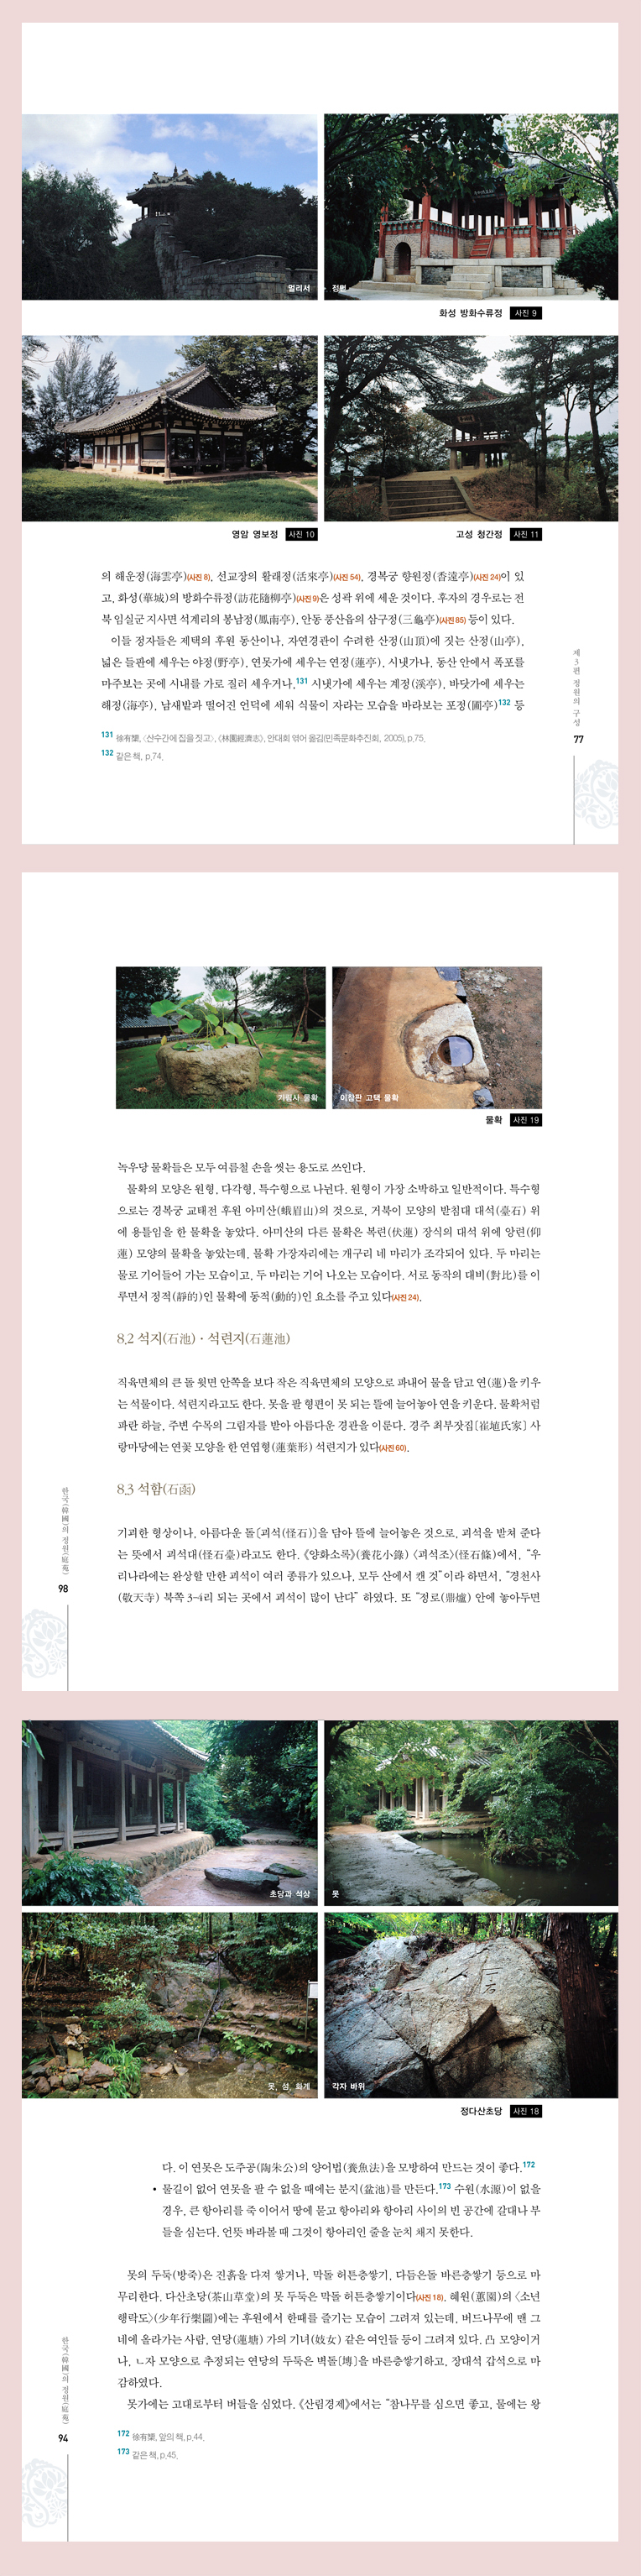 한국의정원미리보기